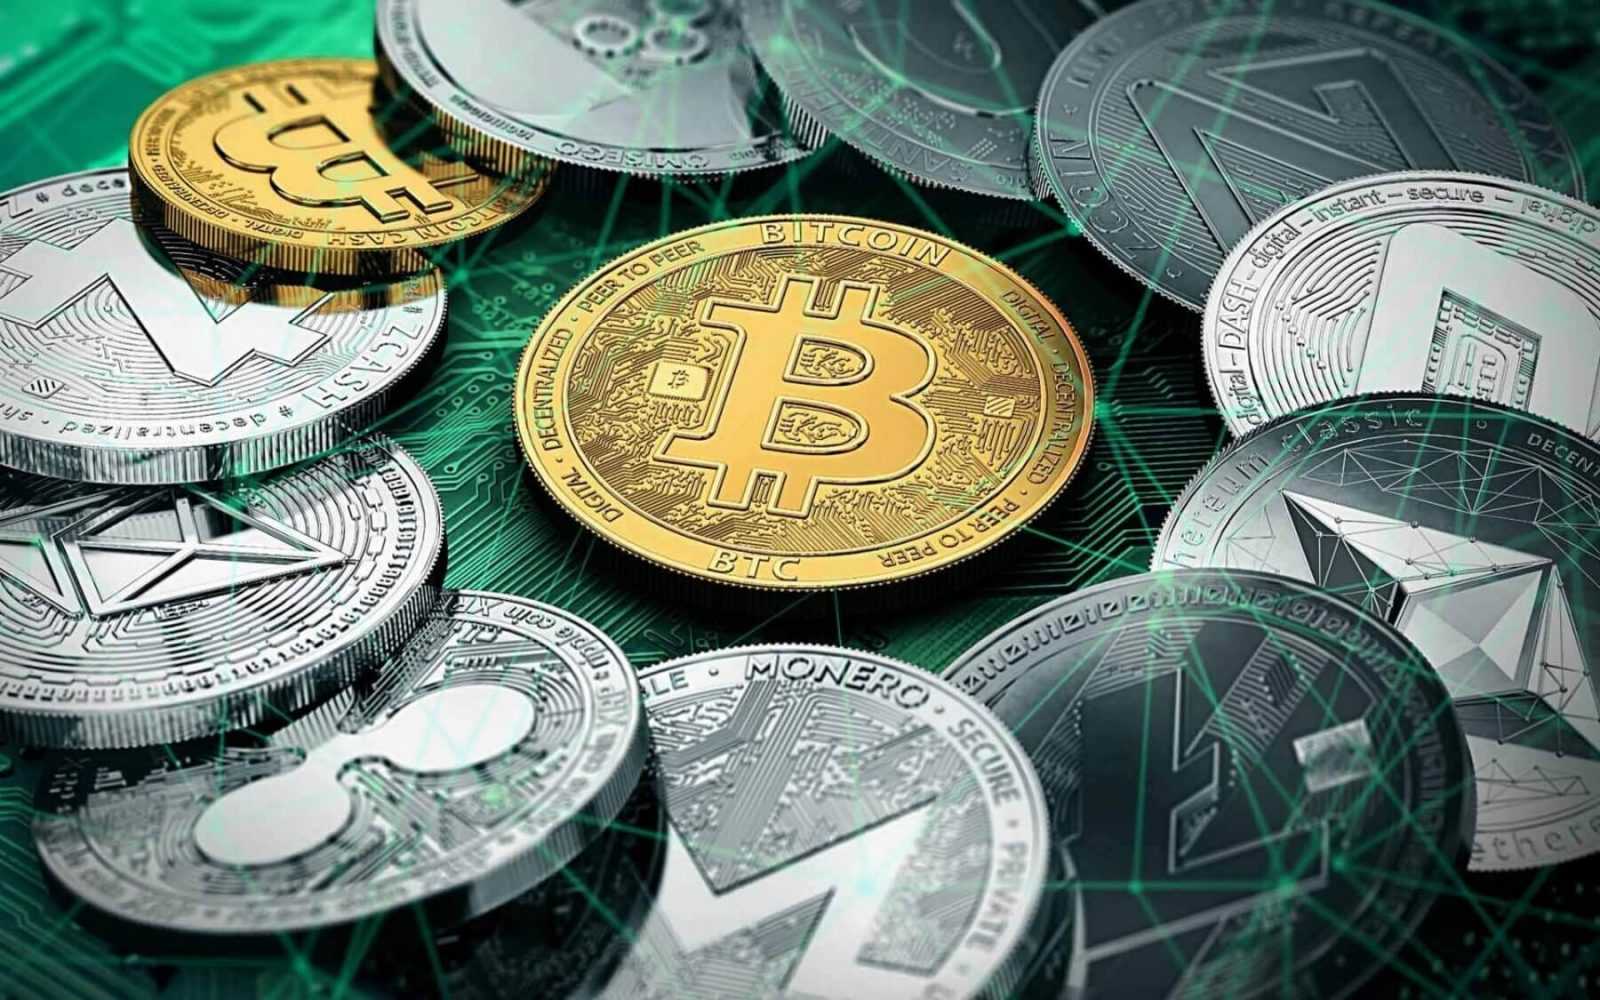 Crypto Market Cap Passes $400 Billion as Bitcoin Tops $9,000